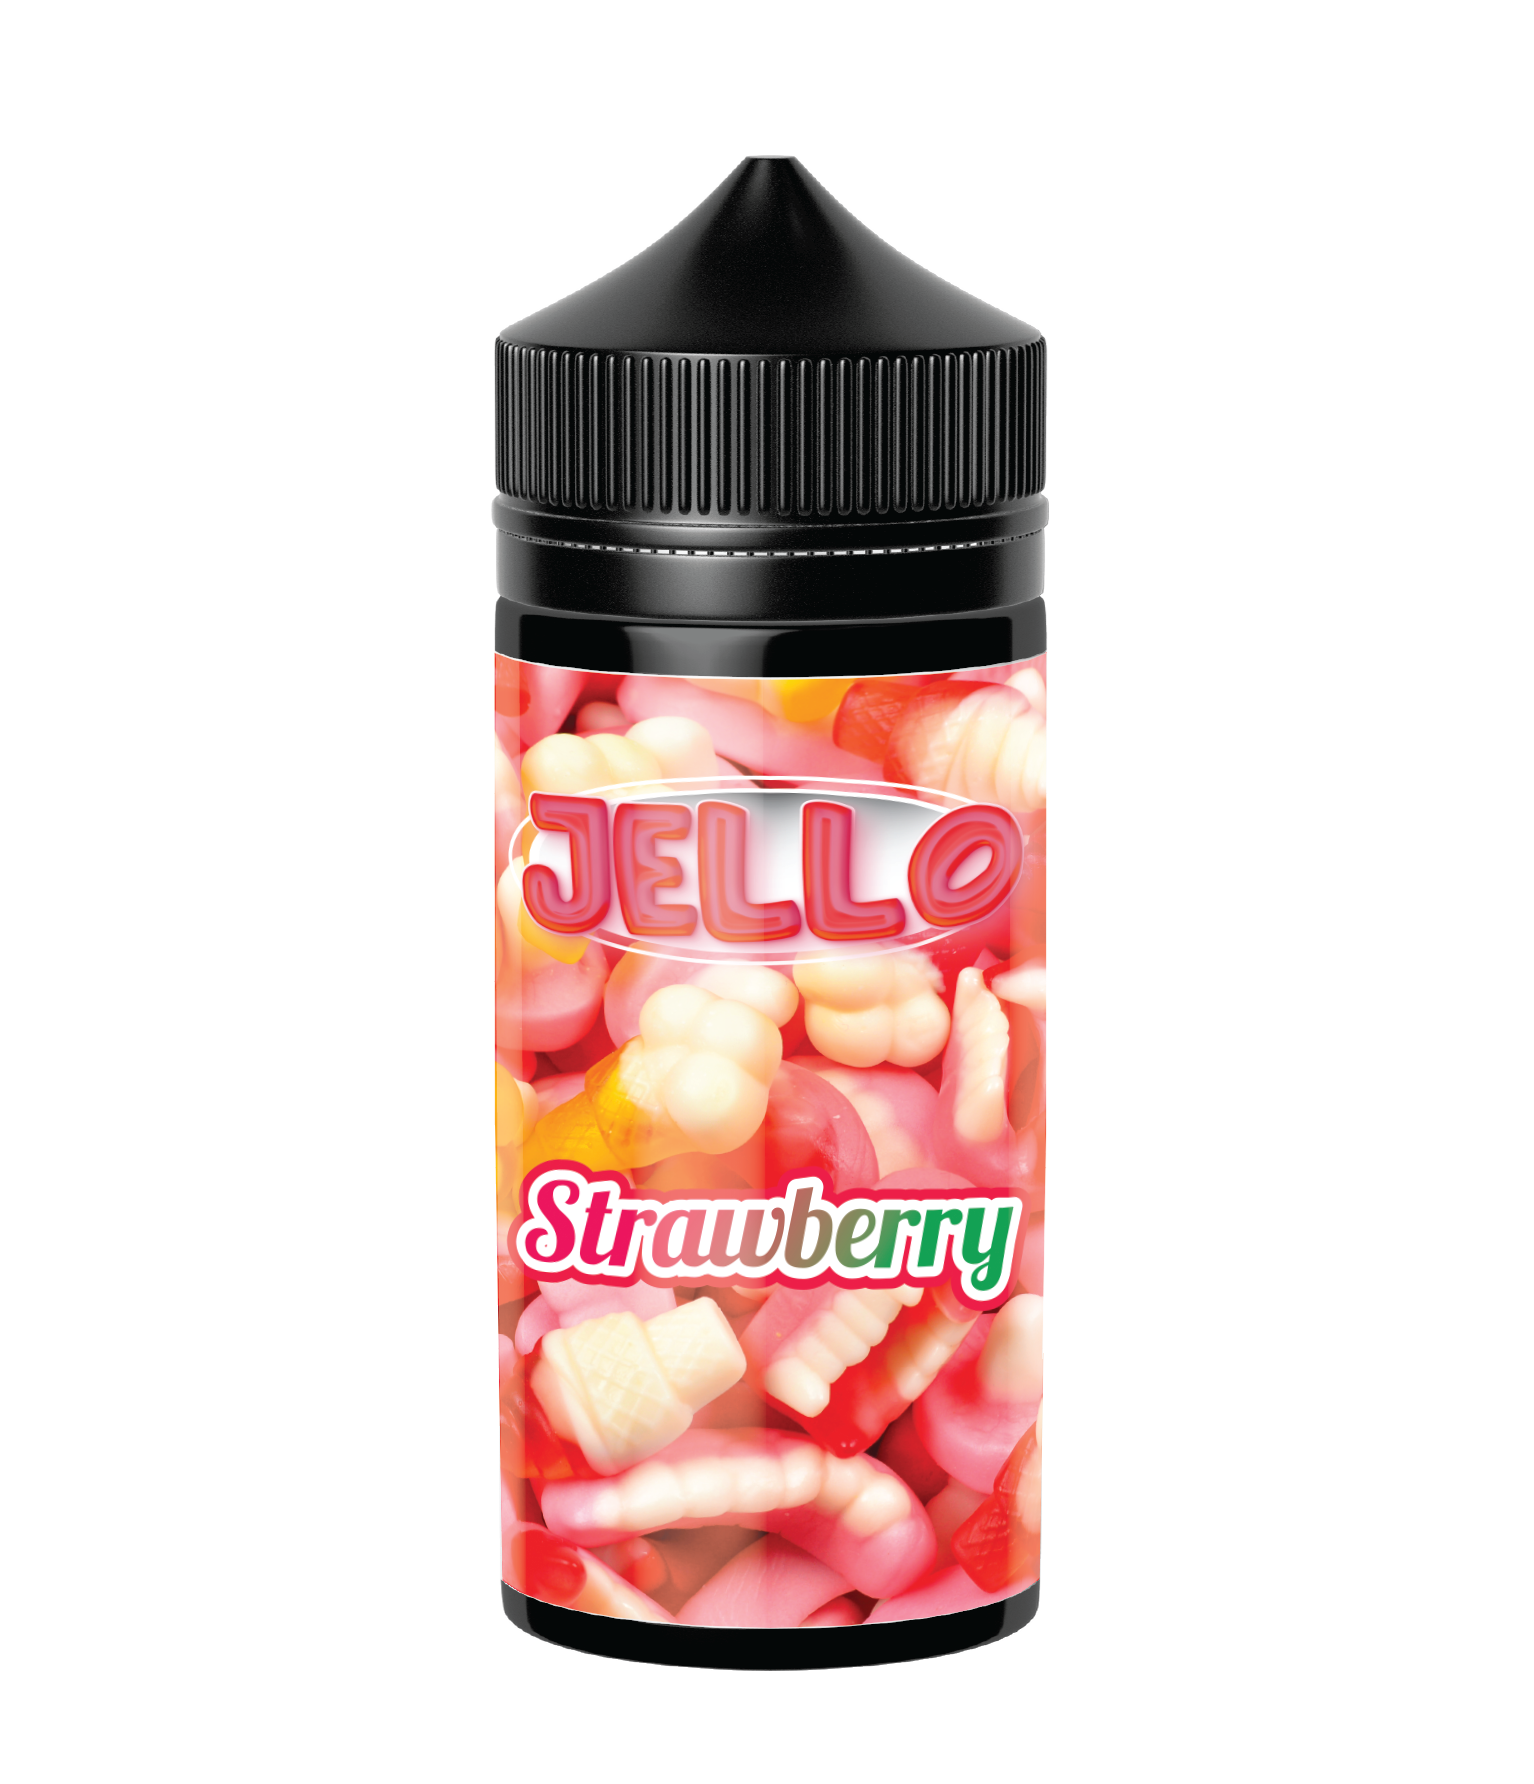 3rd World Liquids Jello Strawberry